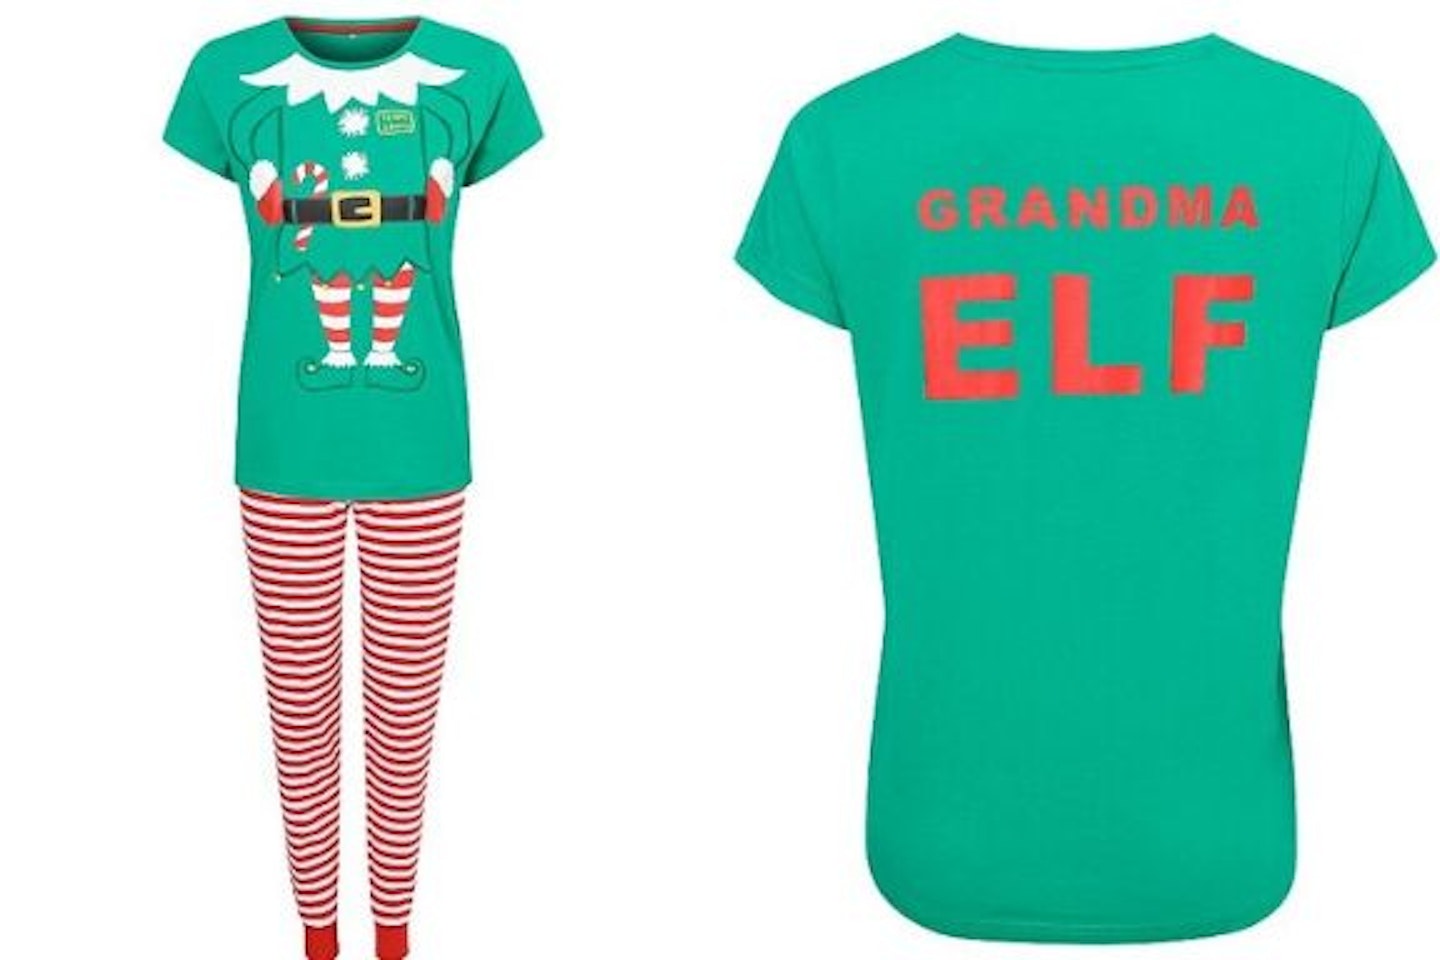 Grandma Elf Christmas Pyjamas